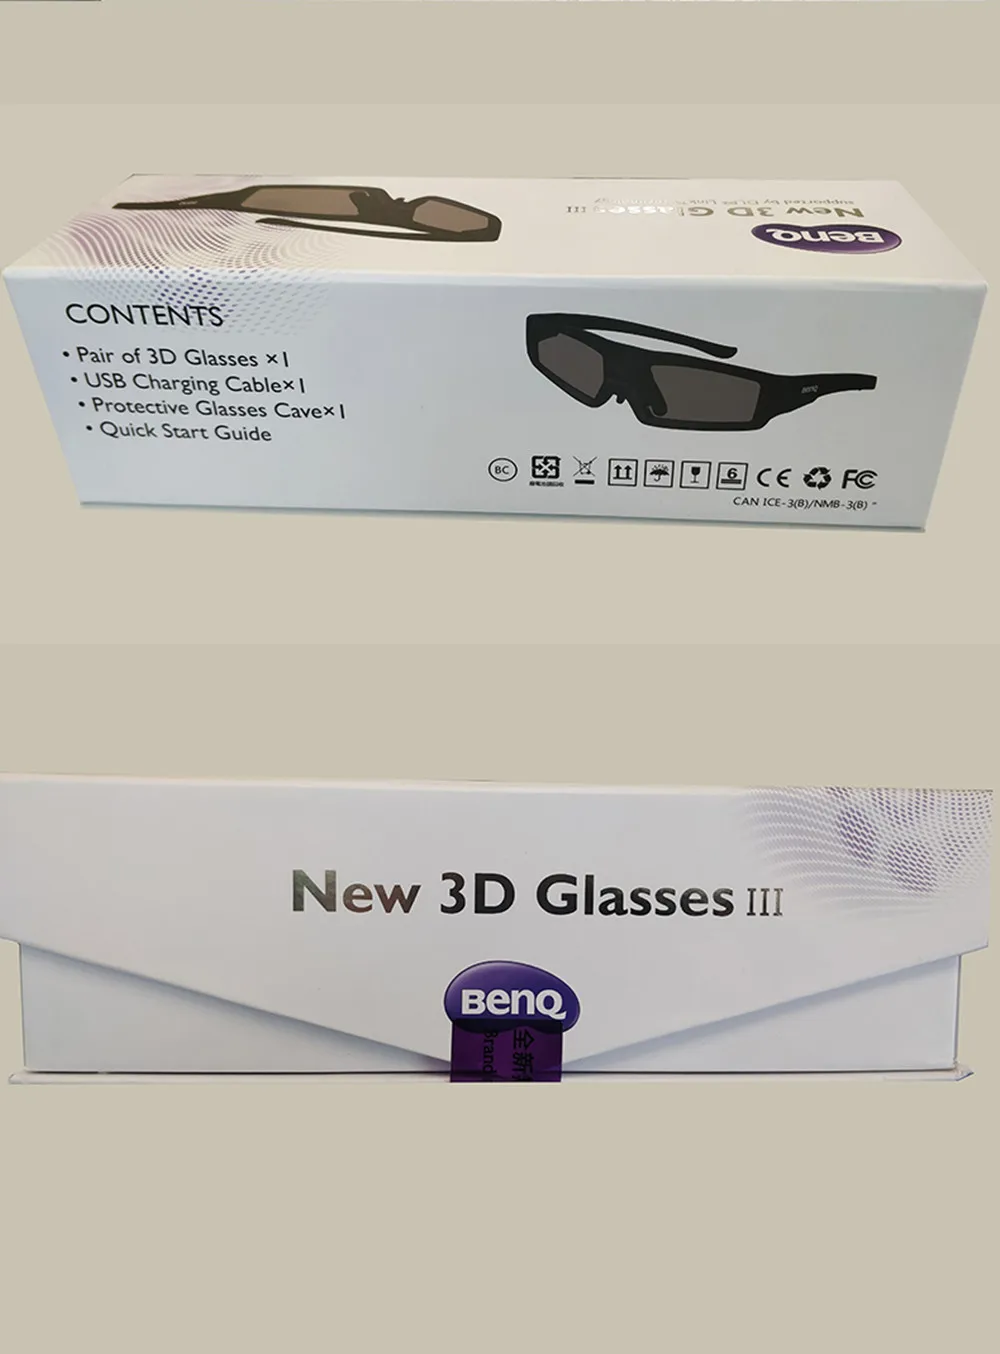 Универсальные активные затвор Ben Q III 3D очки DLP Link 3D очки для DLP 3D проектора 96-144 Гц для BenQ